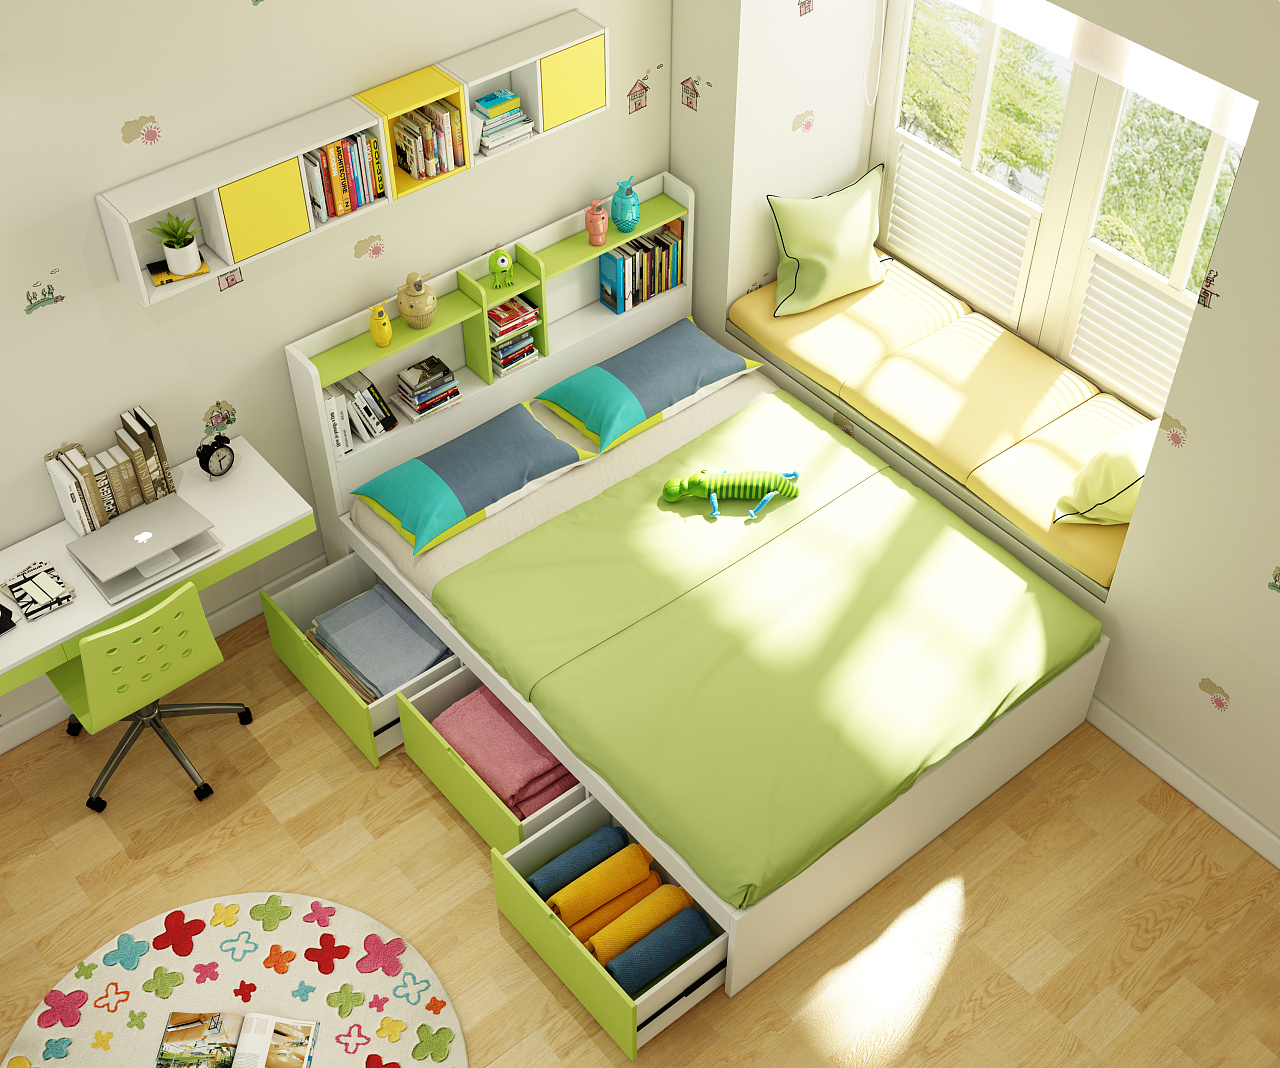 松堡王国松木儿童床让孩子安心温馨入睡-集美家居资讯